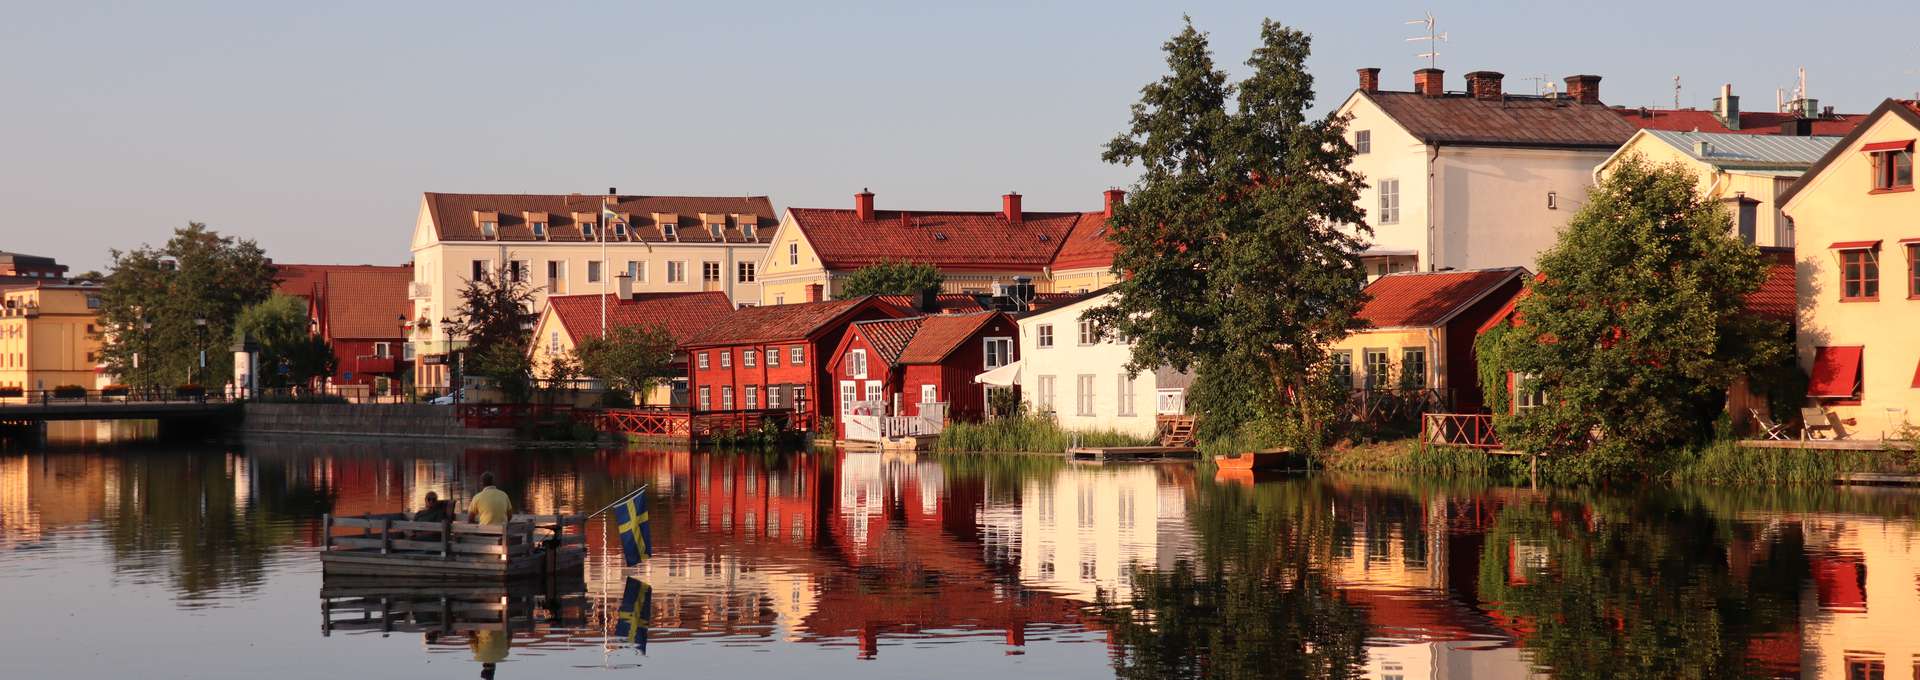 I Eskilstunaån åker en bryggflotte och i bakgrunden ser man Gamla staden med sina gamla hus